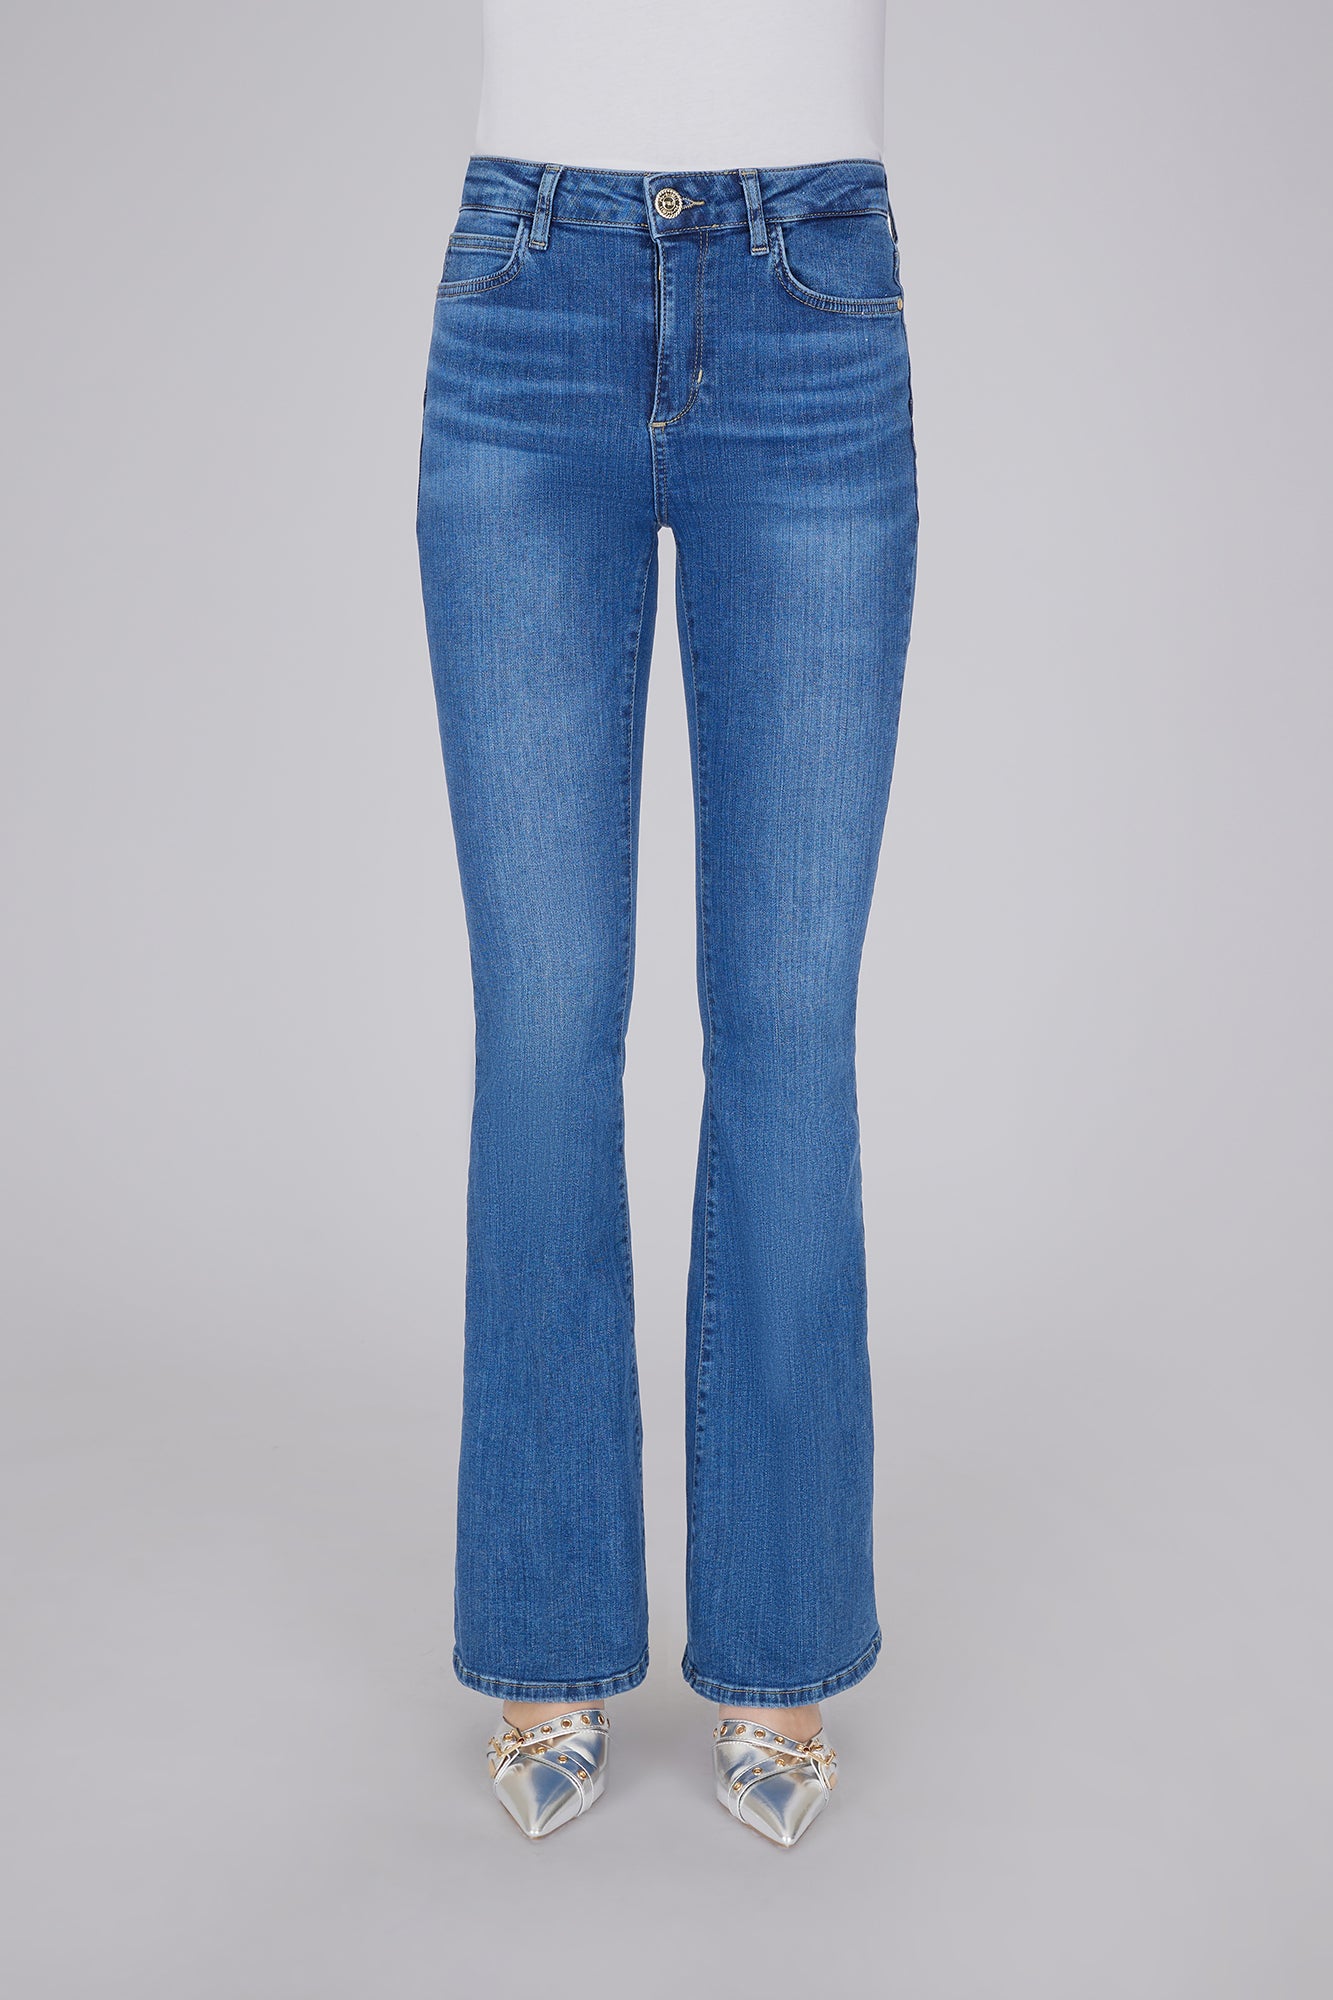 Jeans a zampa Marilyn